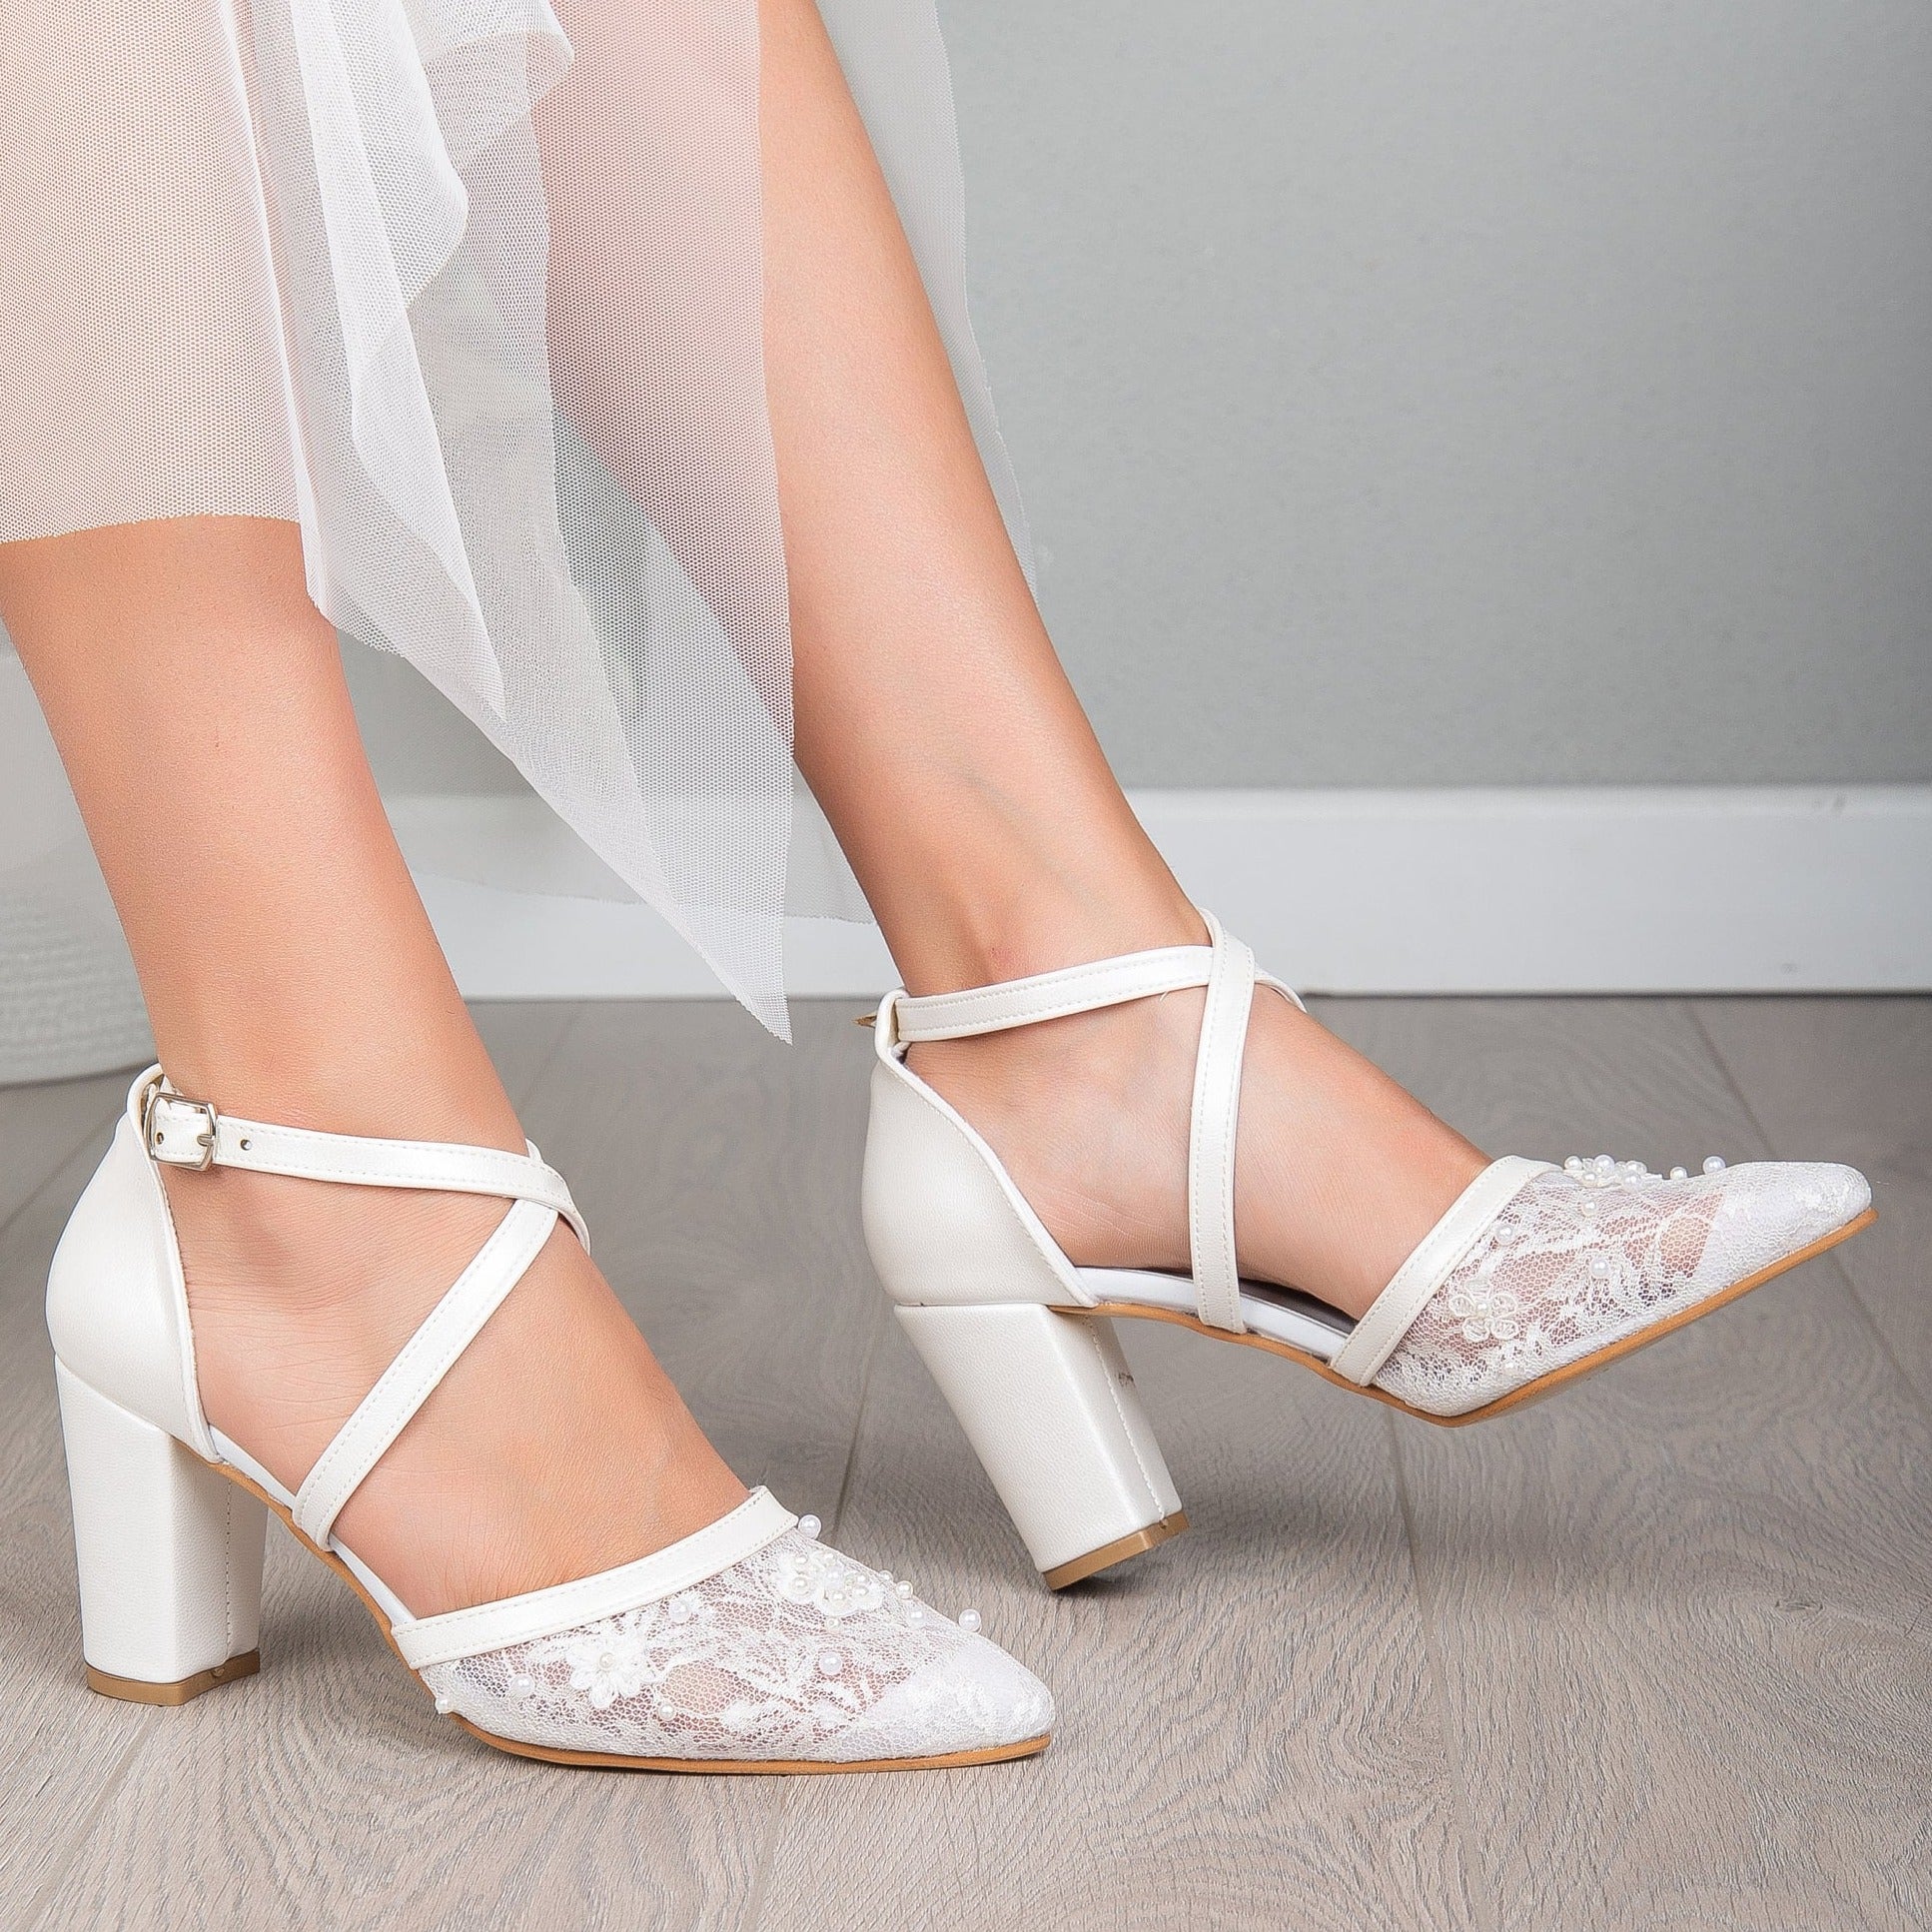 Ivory Low Block Heel | Wedding Short Heels For Bride – Phoenix England